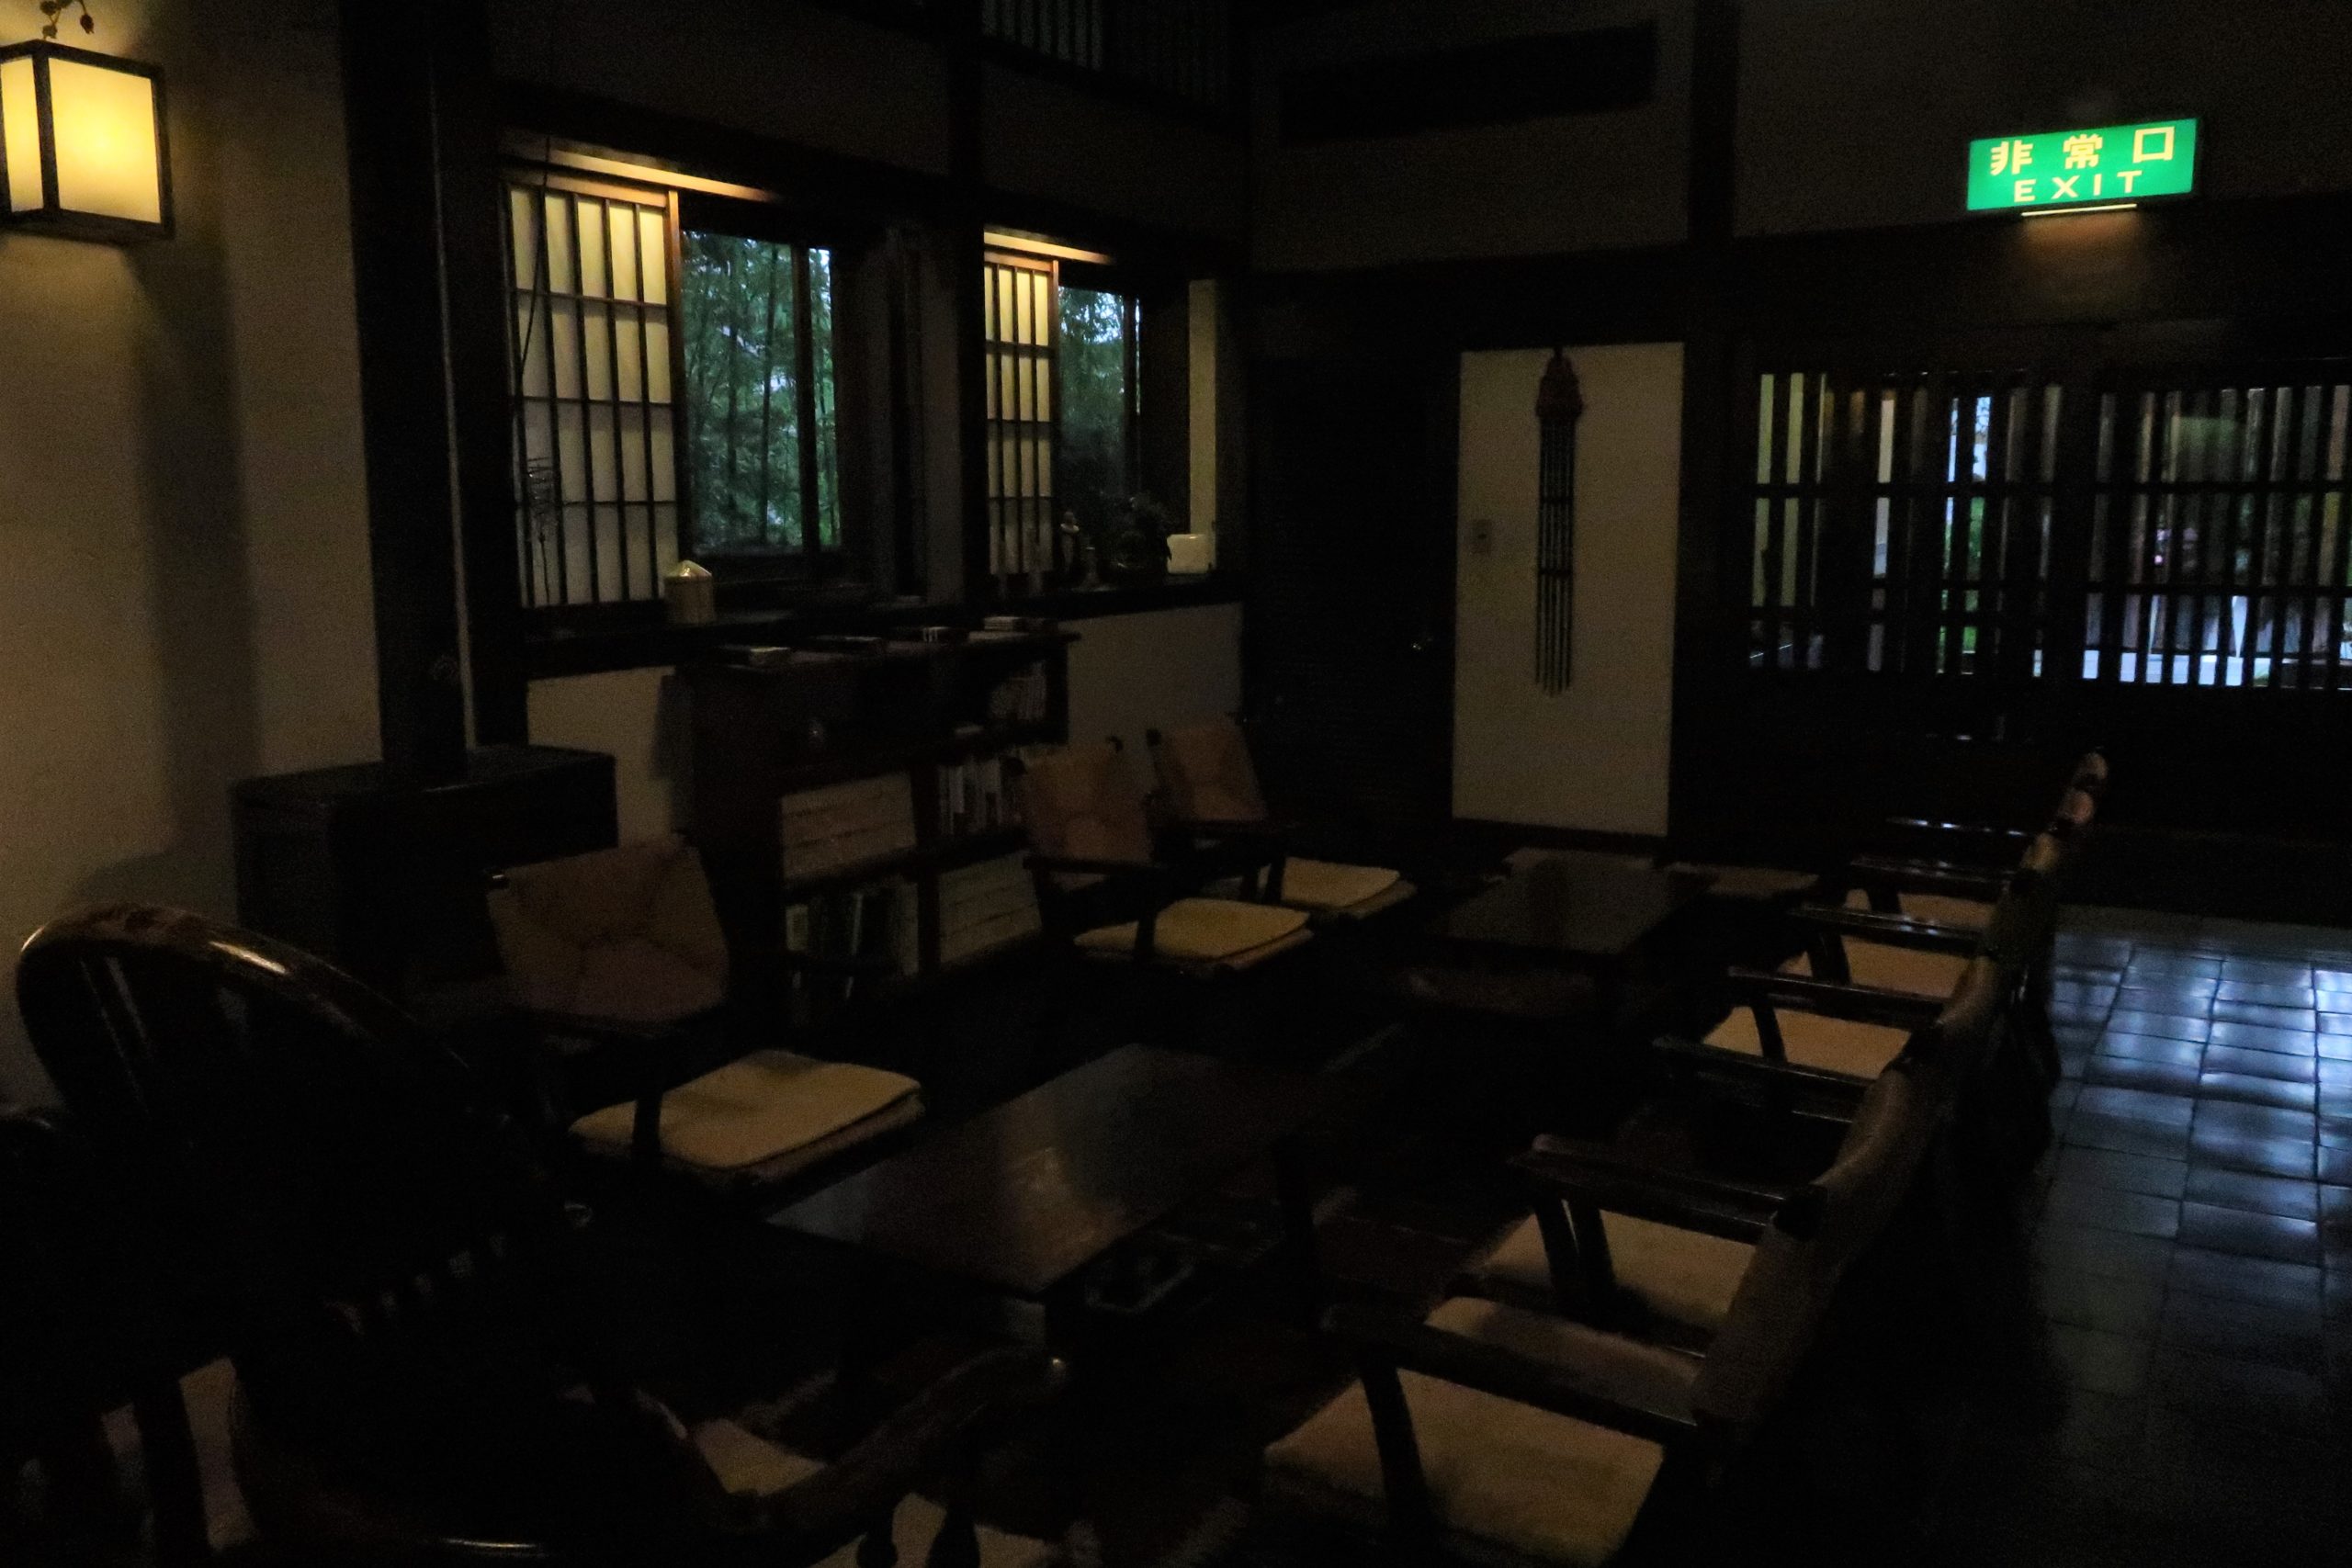 長野県松本市「本棟造りの宿 浅間温泉 菊之湯」に宿泊しました。 展示してある美術品の紹介をしています。